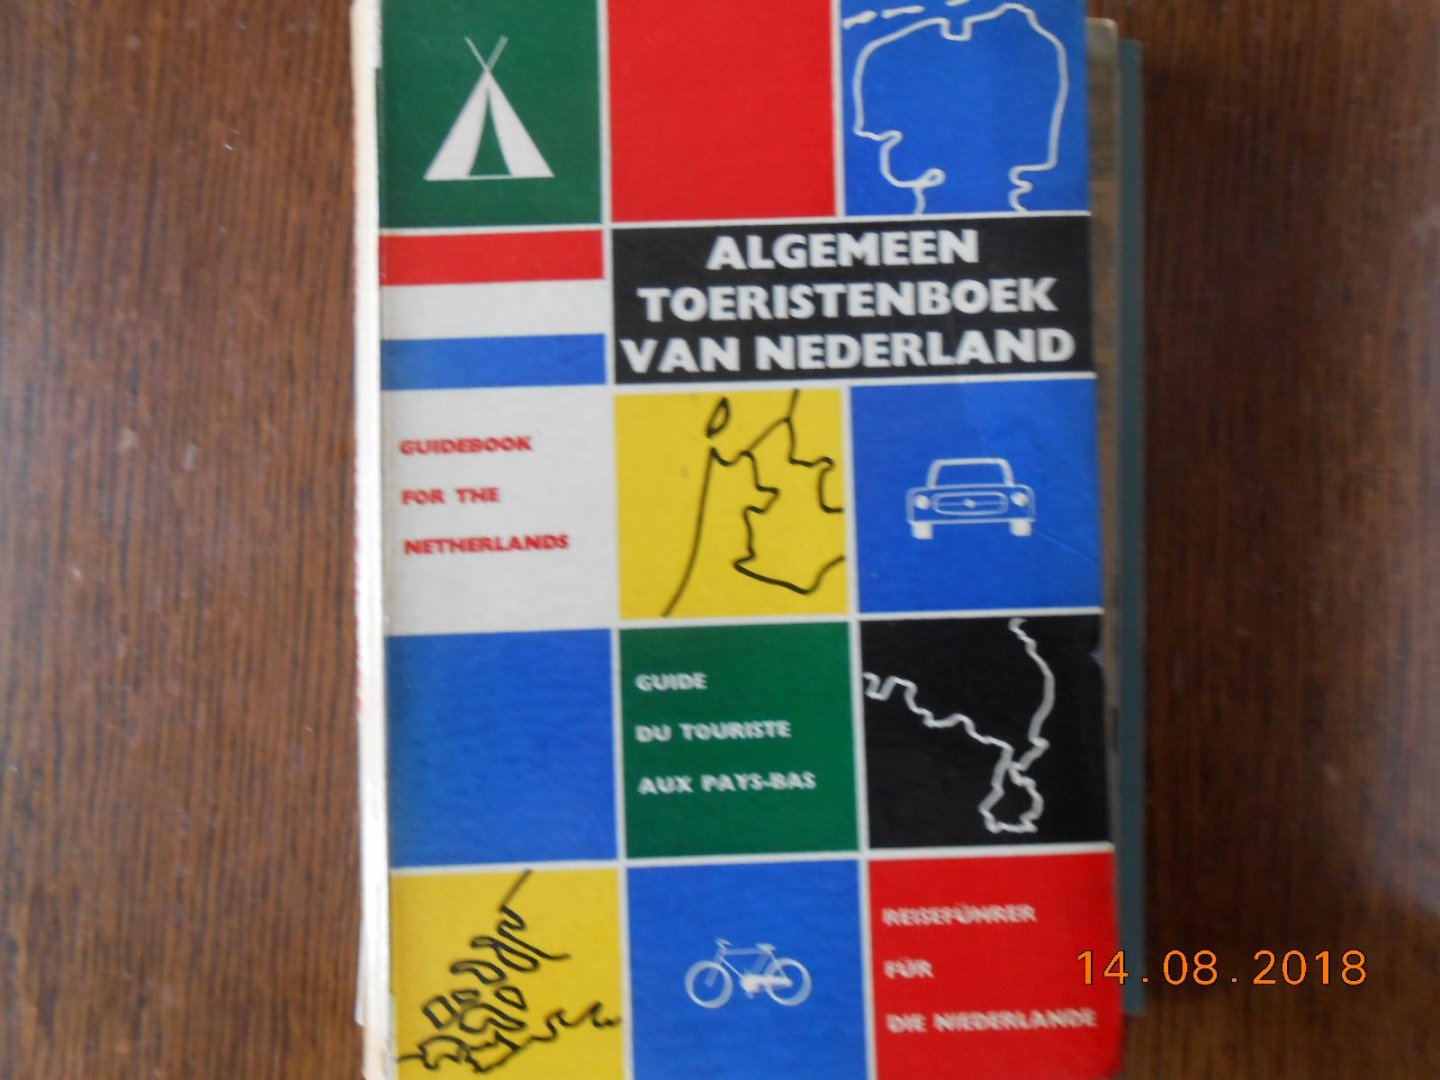  - Algemeen toeristenboek van Nederland